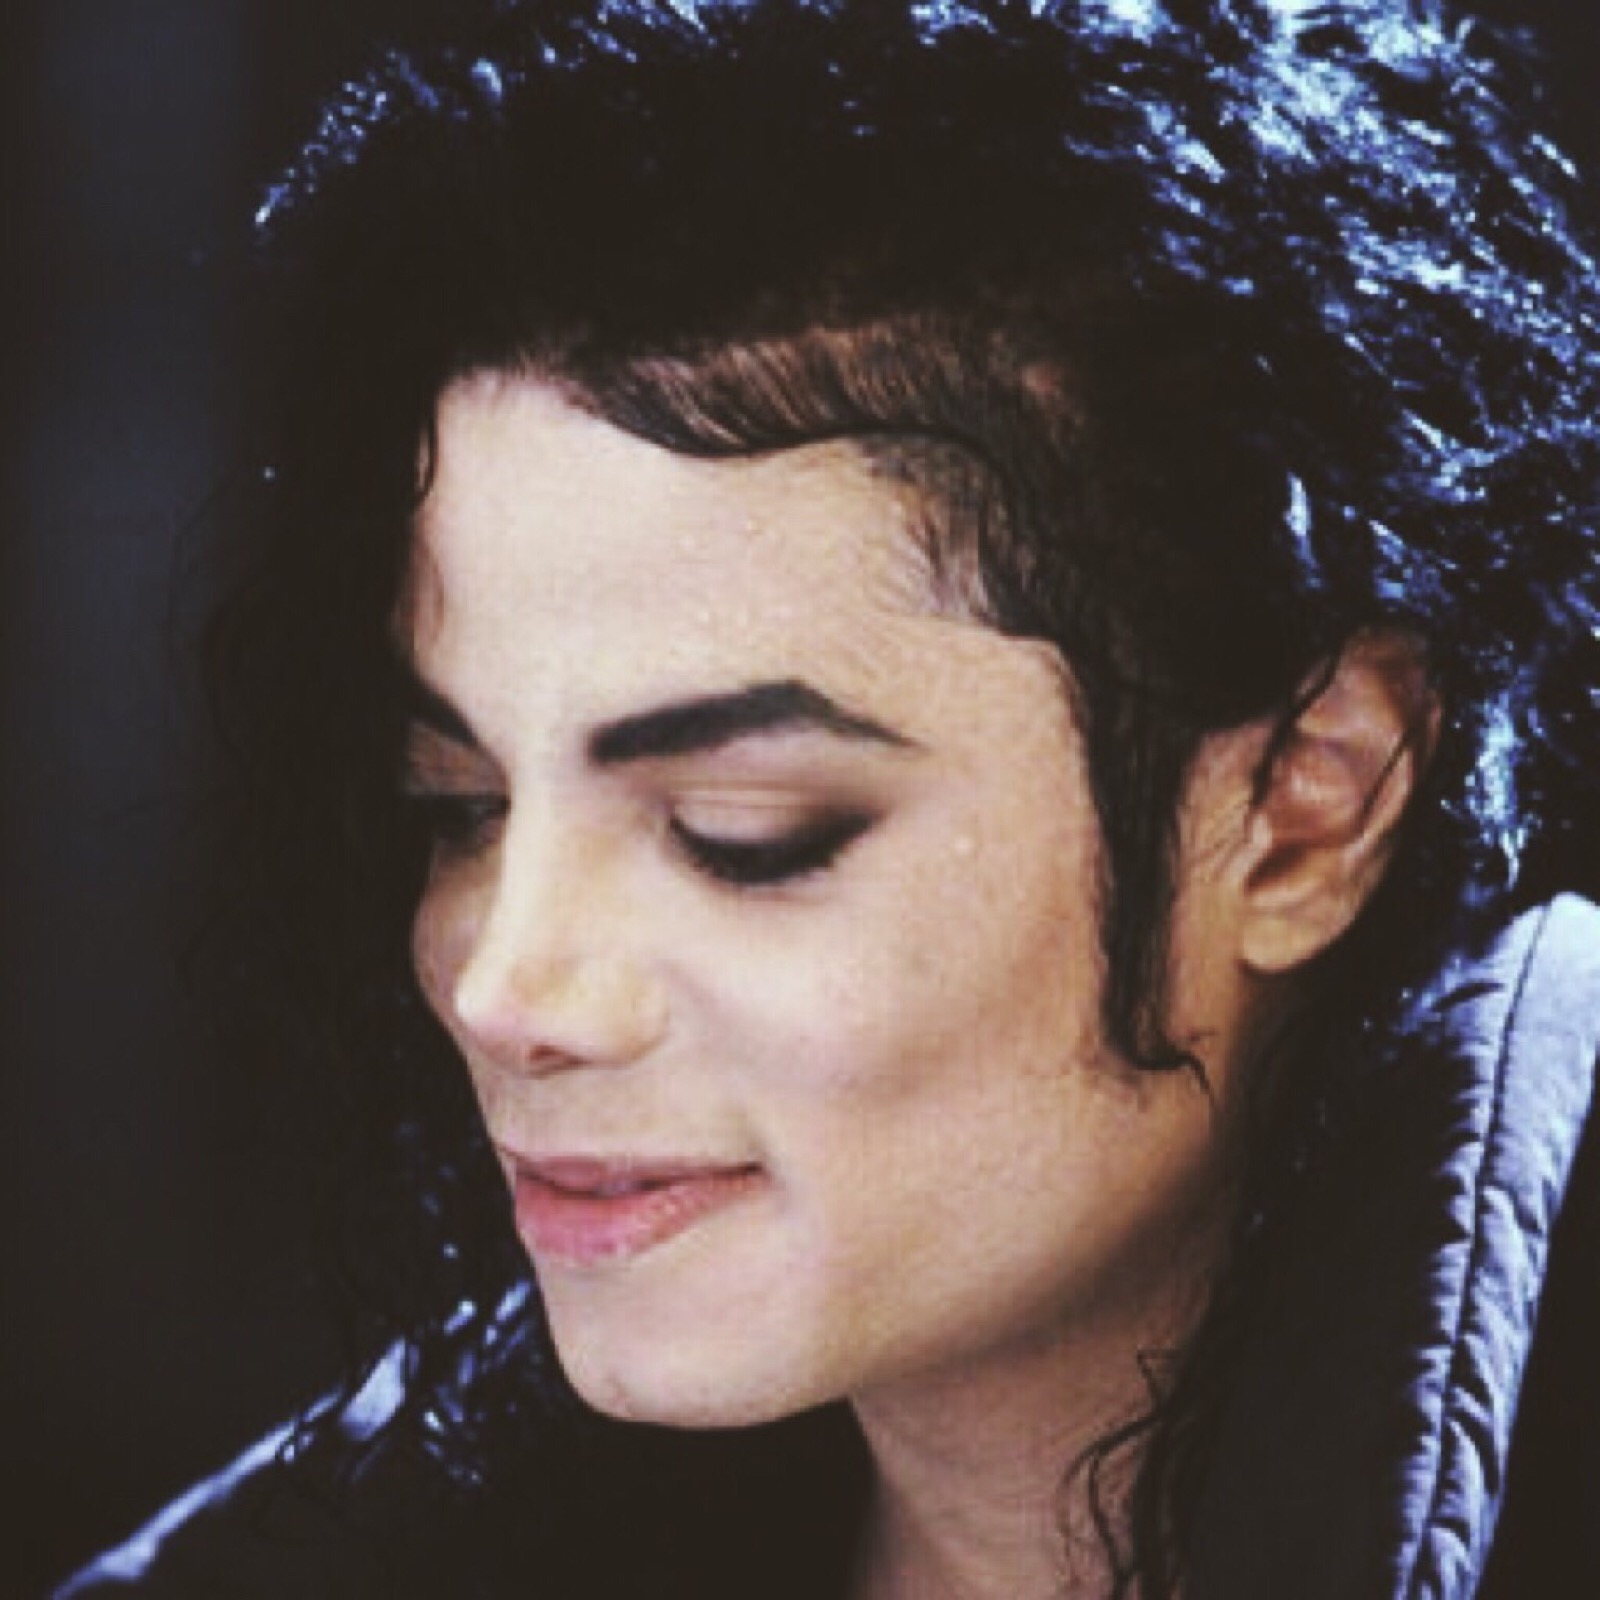 【迈克尔杰克逊】你的笑真的能温柔时光啊